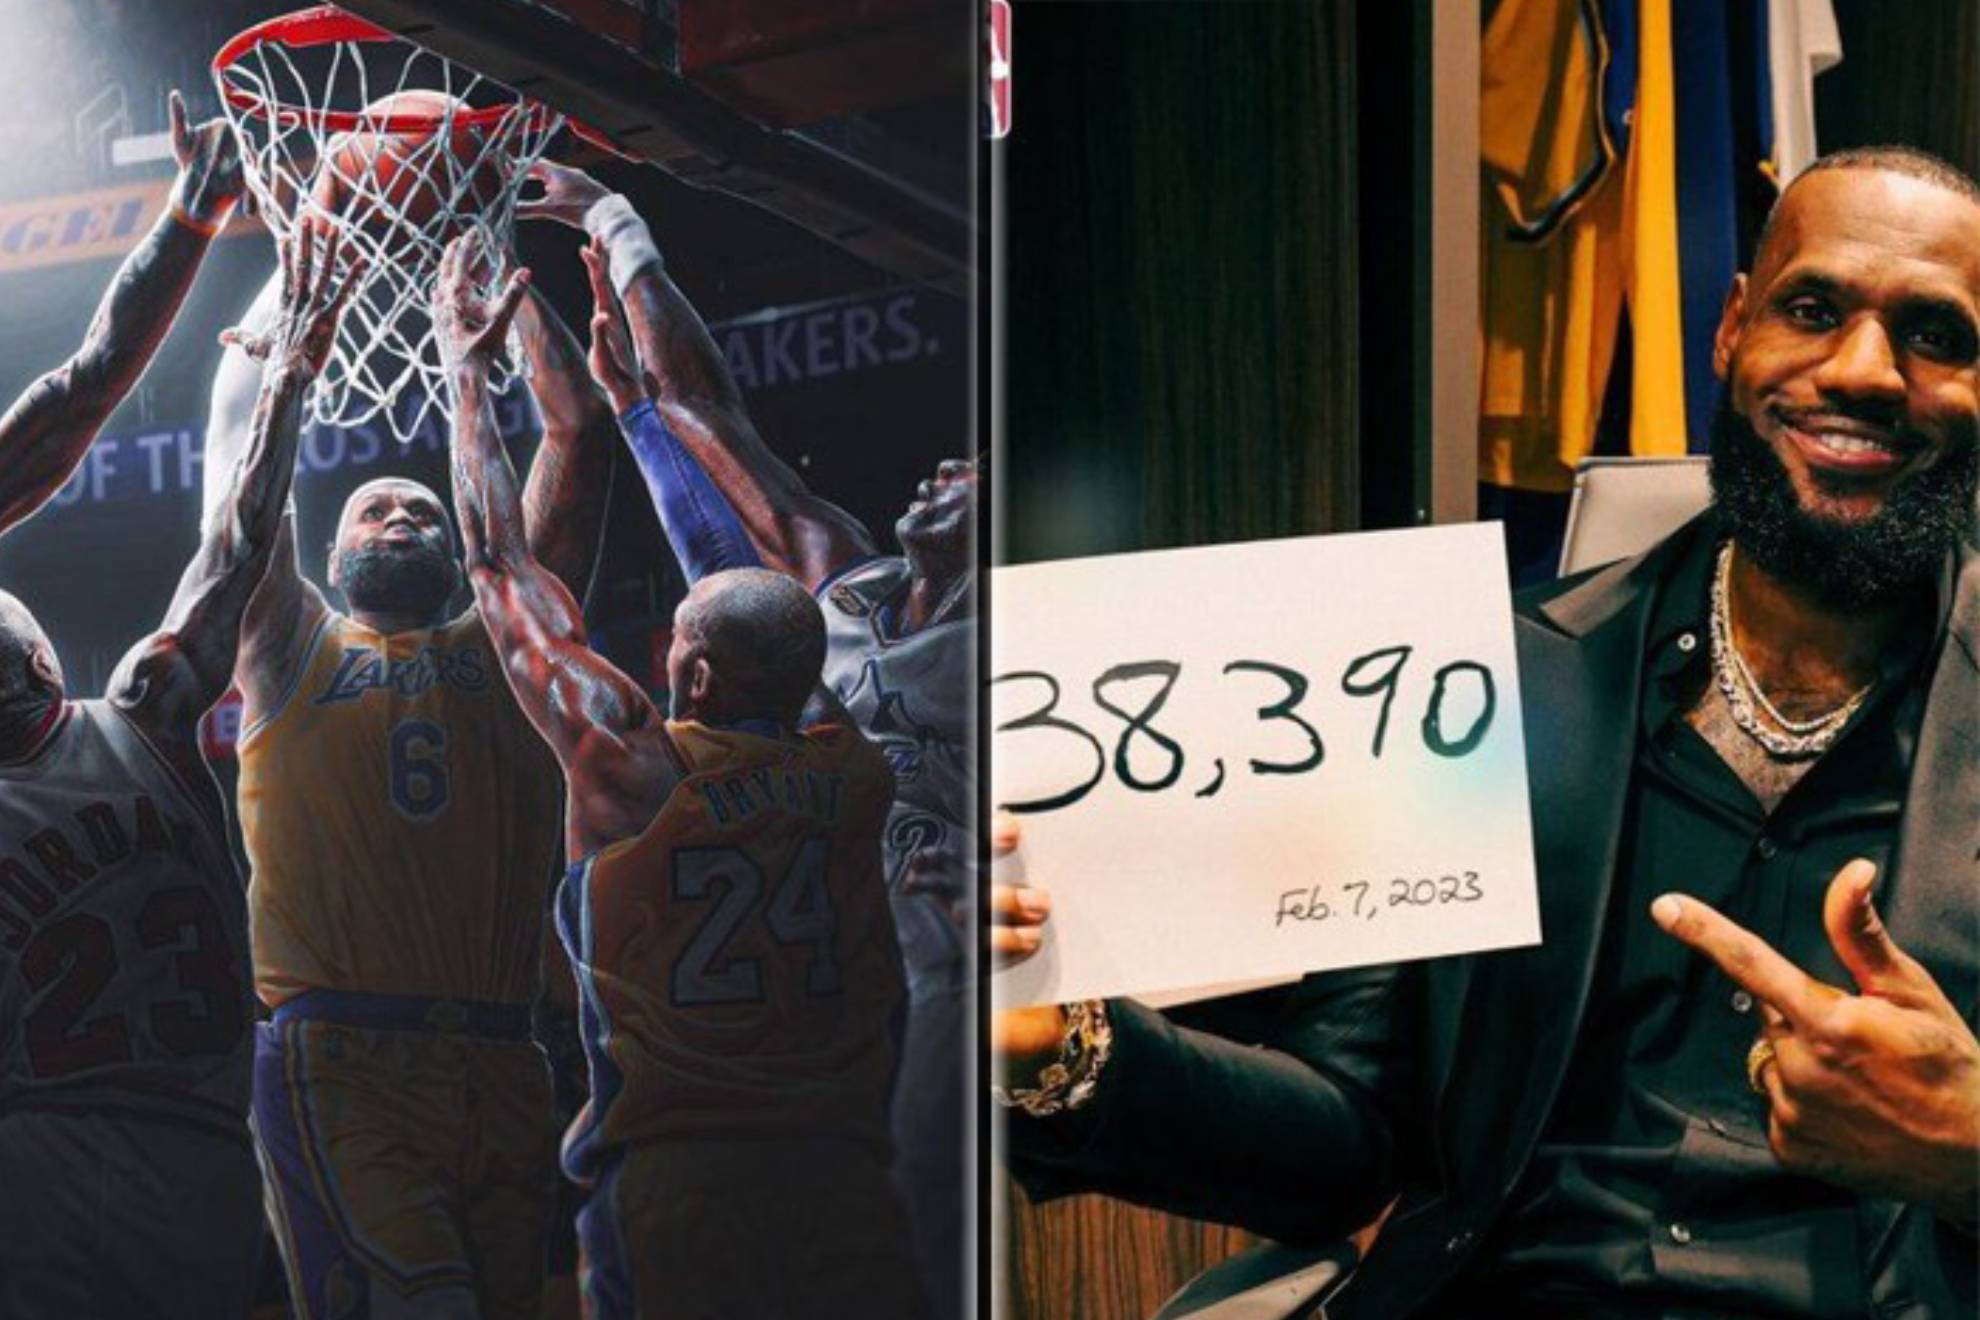 Las redes sociales reaccionaron con gran cantidad de memes y montajes al nuevo récord de <strong><a href="https://www.marca.com/baloncesto/nba/2023/02/08/63e35400e2704e9f608b4581.html" target="_blank">LeBron James, que superó a Kareem Abdul Jabbar como máximo anotador histórico de la NBA</a></strong>.